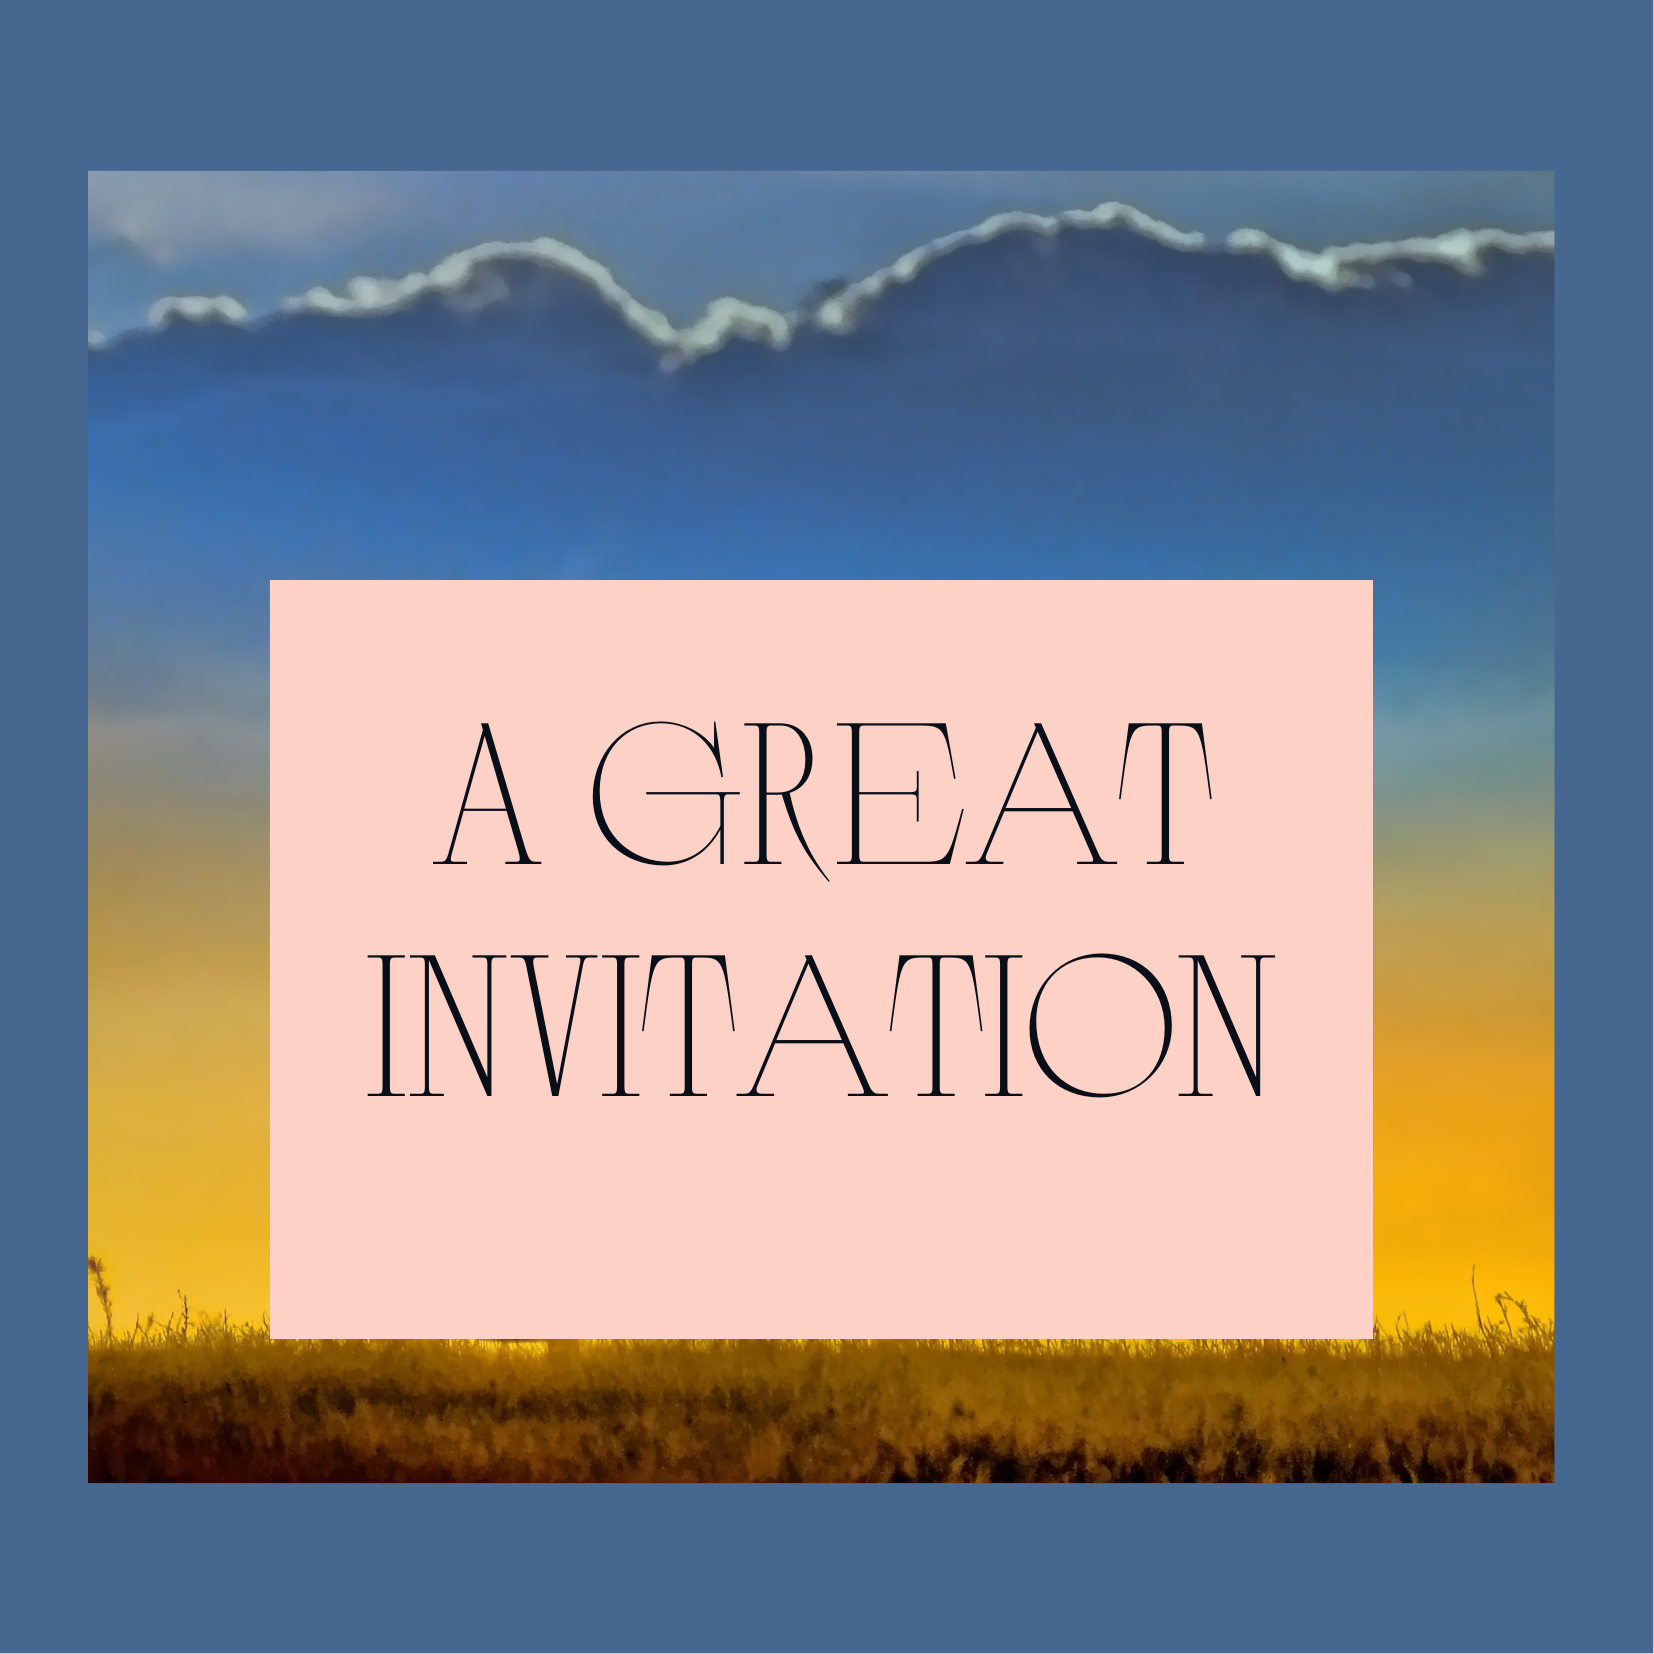 A great invitation